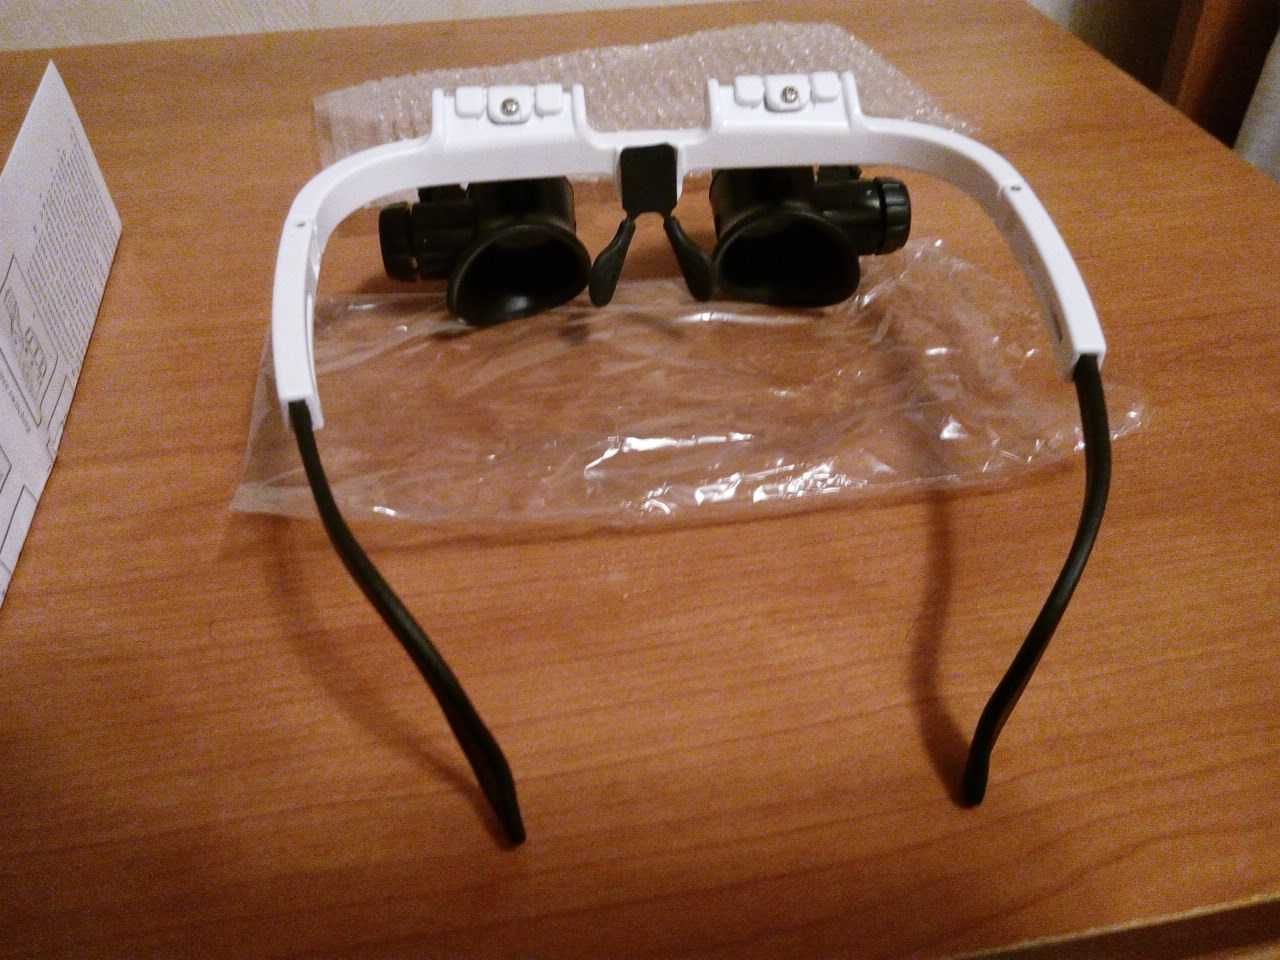 очки с двумя видами увеличительных стекол Х8,Х23